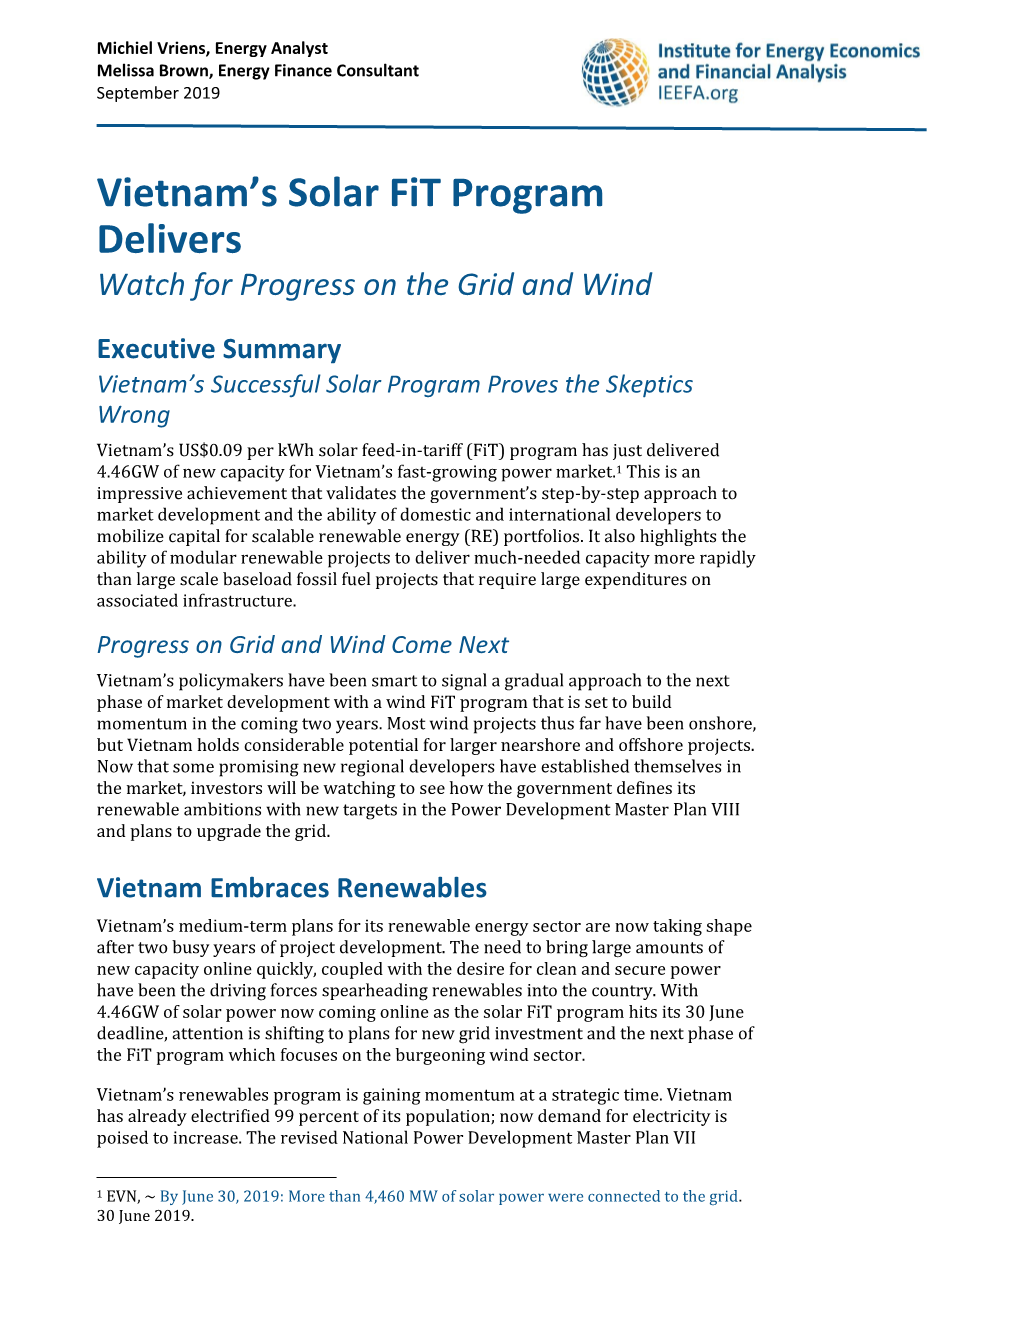 Vietnam's Solar Fit Program Delivers